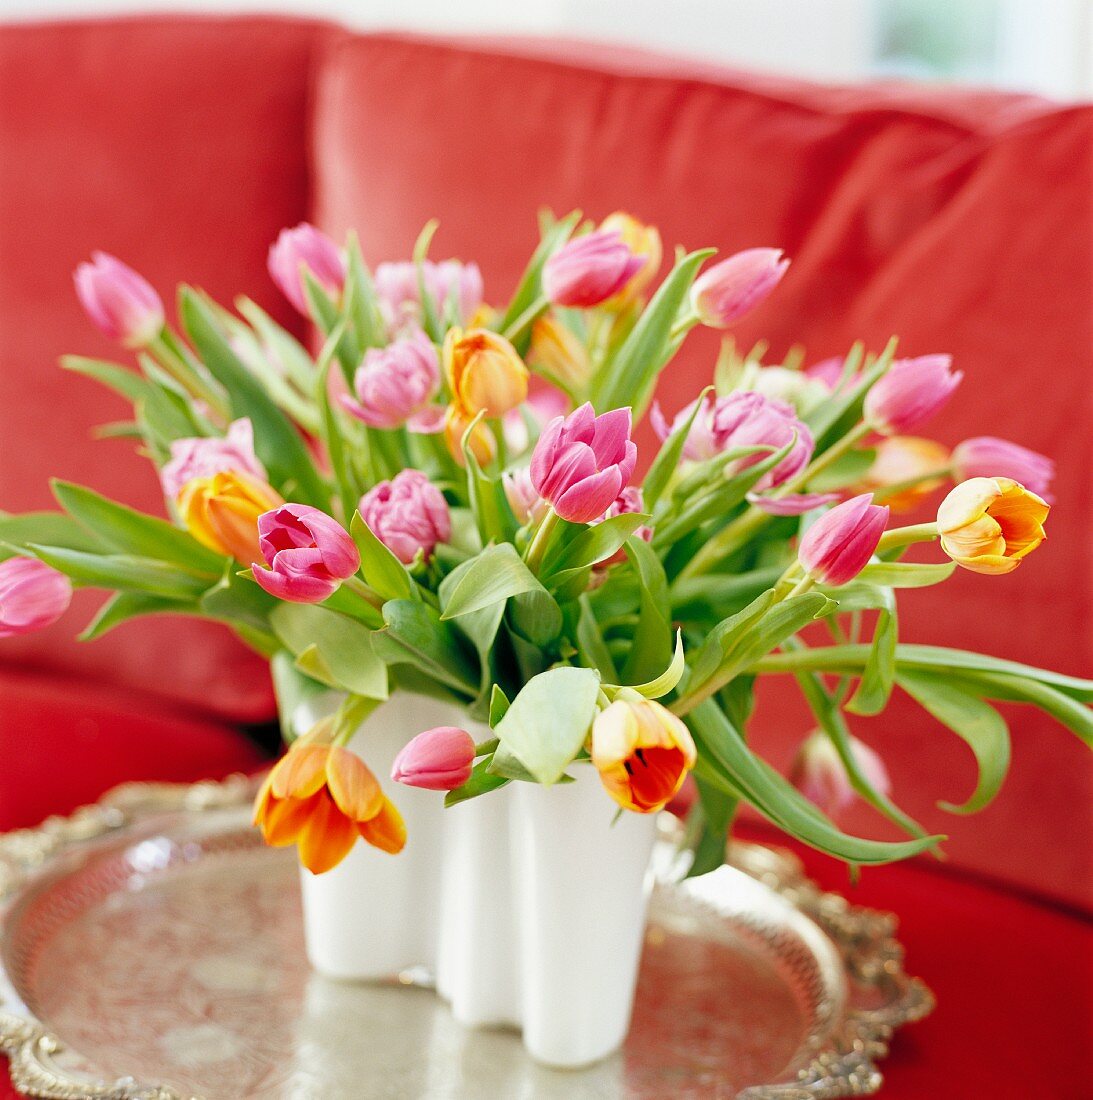 Multi-coloured tulips in vase